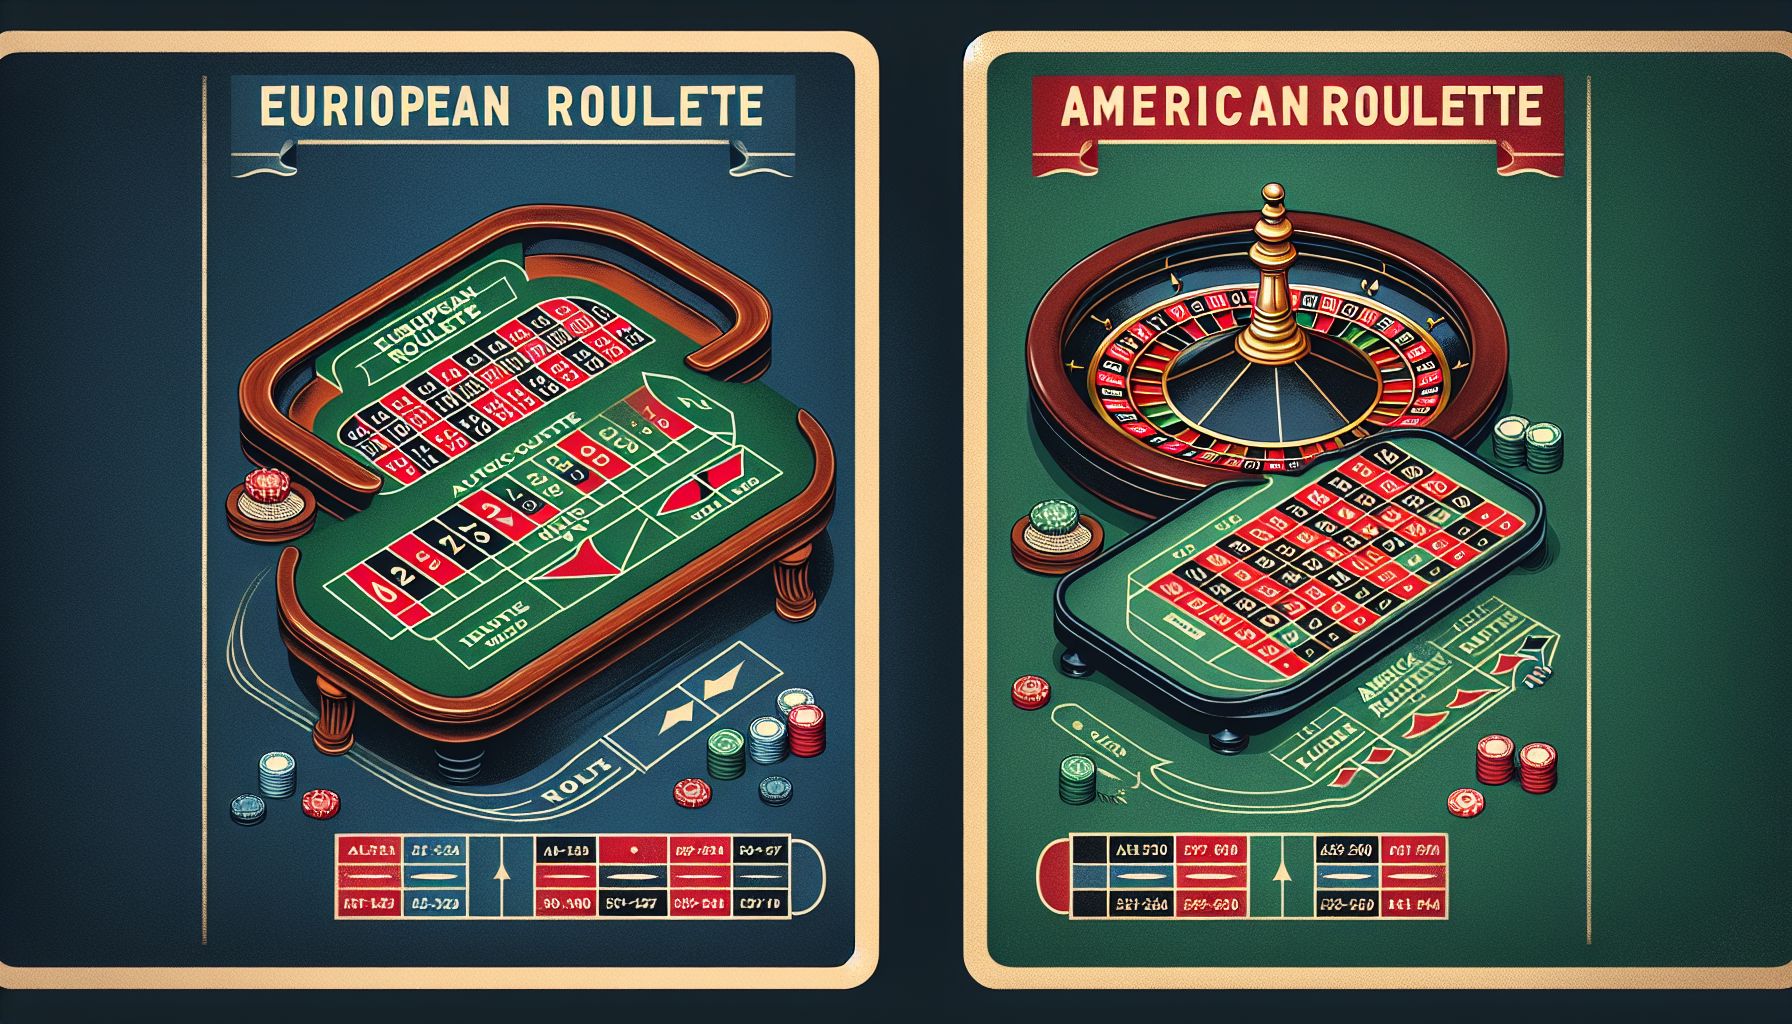 Perbedaan Utama antara Roulette Eropa dan Amerika